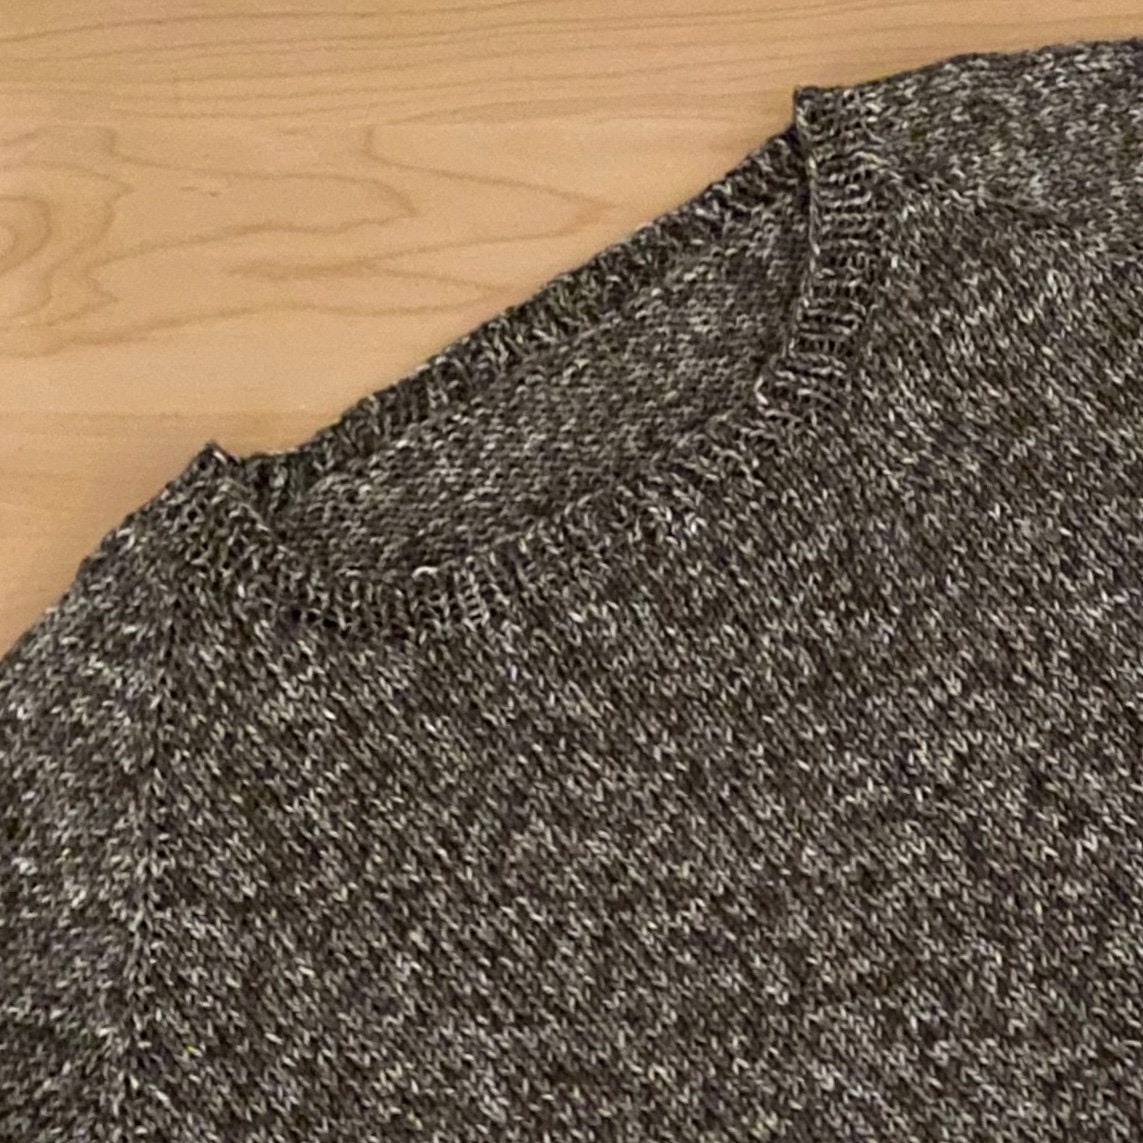 Knit Round Neck Raglan Sweater Jumper Pattern Top Down - Etsy